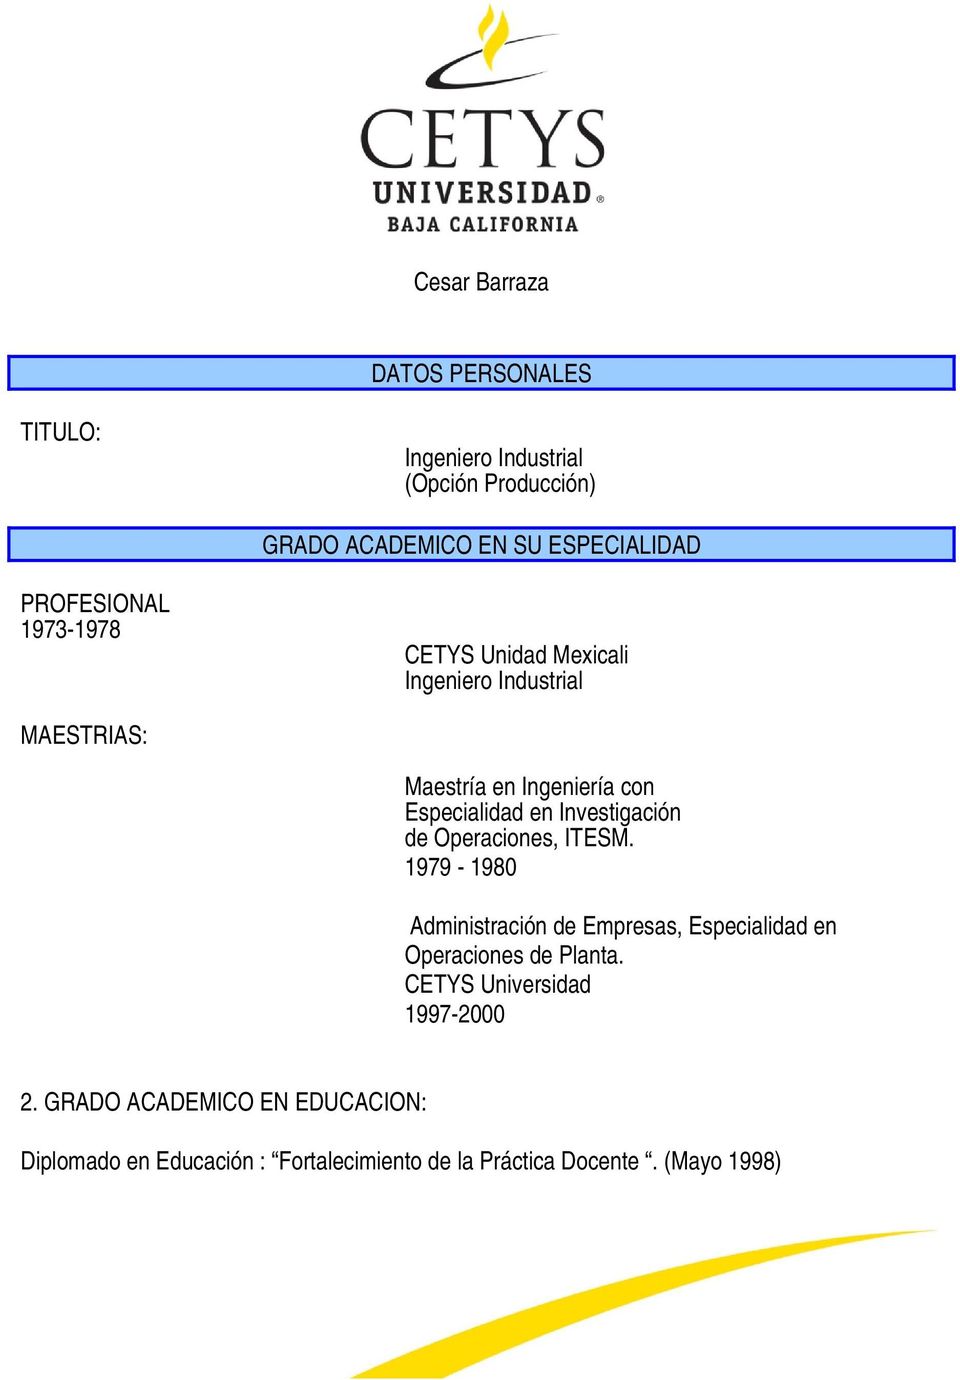 Investigación de Operaciones, ITESM. 1979-1980 Administración de Empresas, Especialidad en Operaciones de Planta.